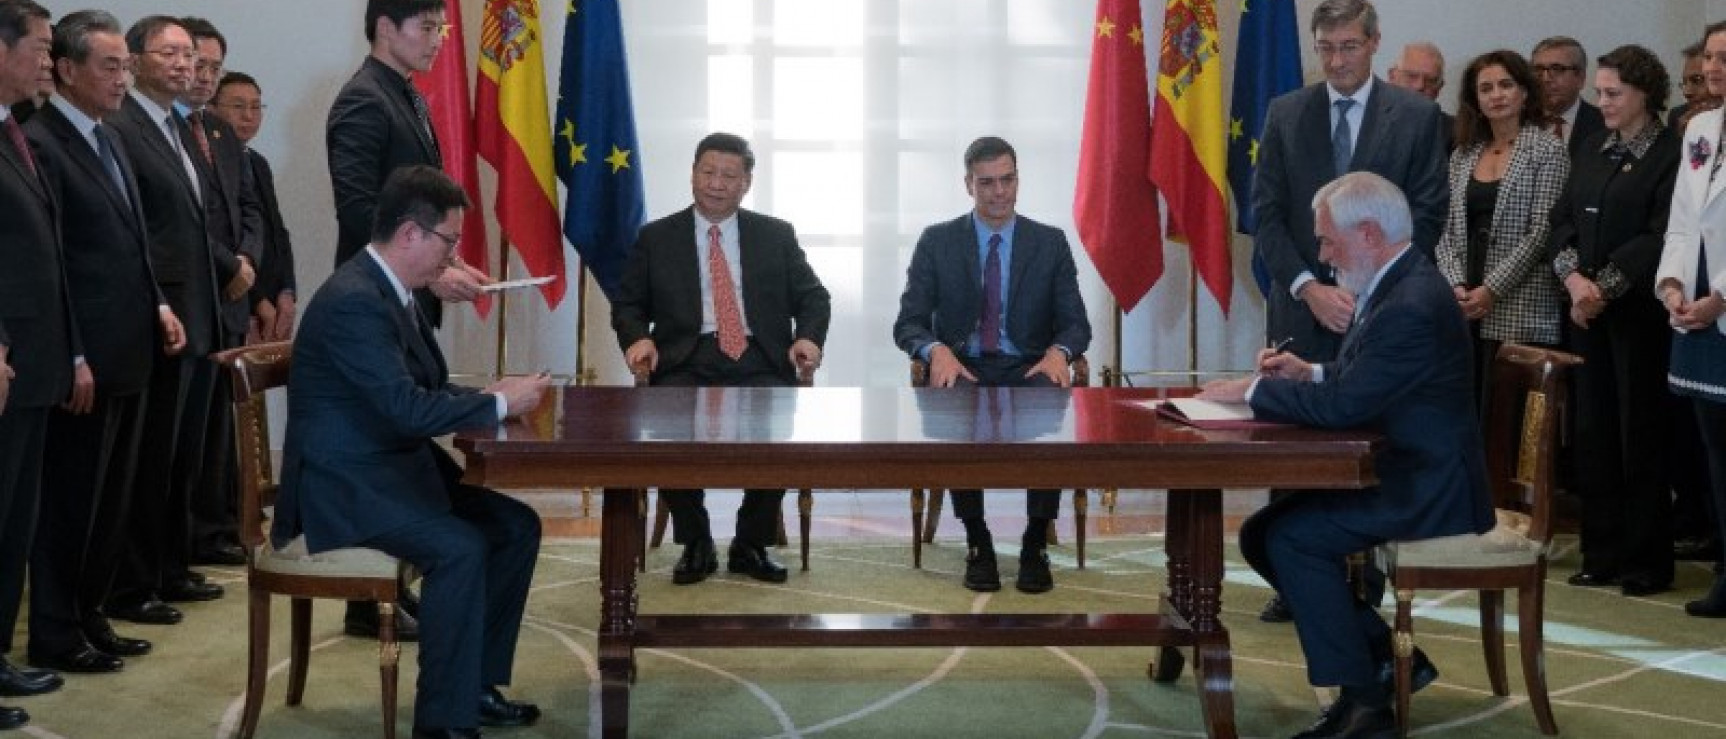 Firma de un convenio de cooperación cultural y lingüística entre la Real Academia Española (RAE) y la Universidad de Estudios Internacionales de Shanghái (SISU).